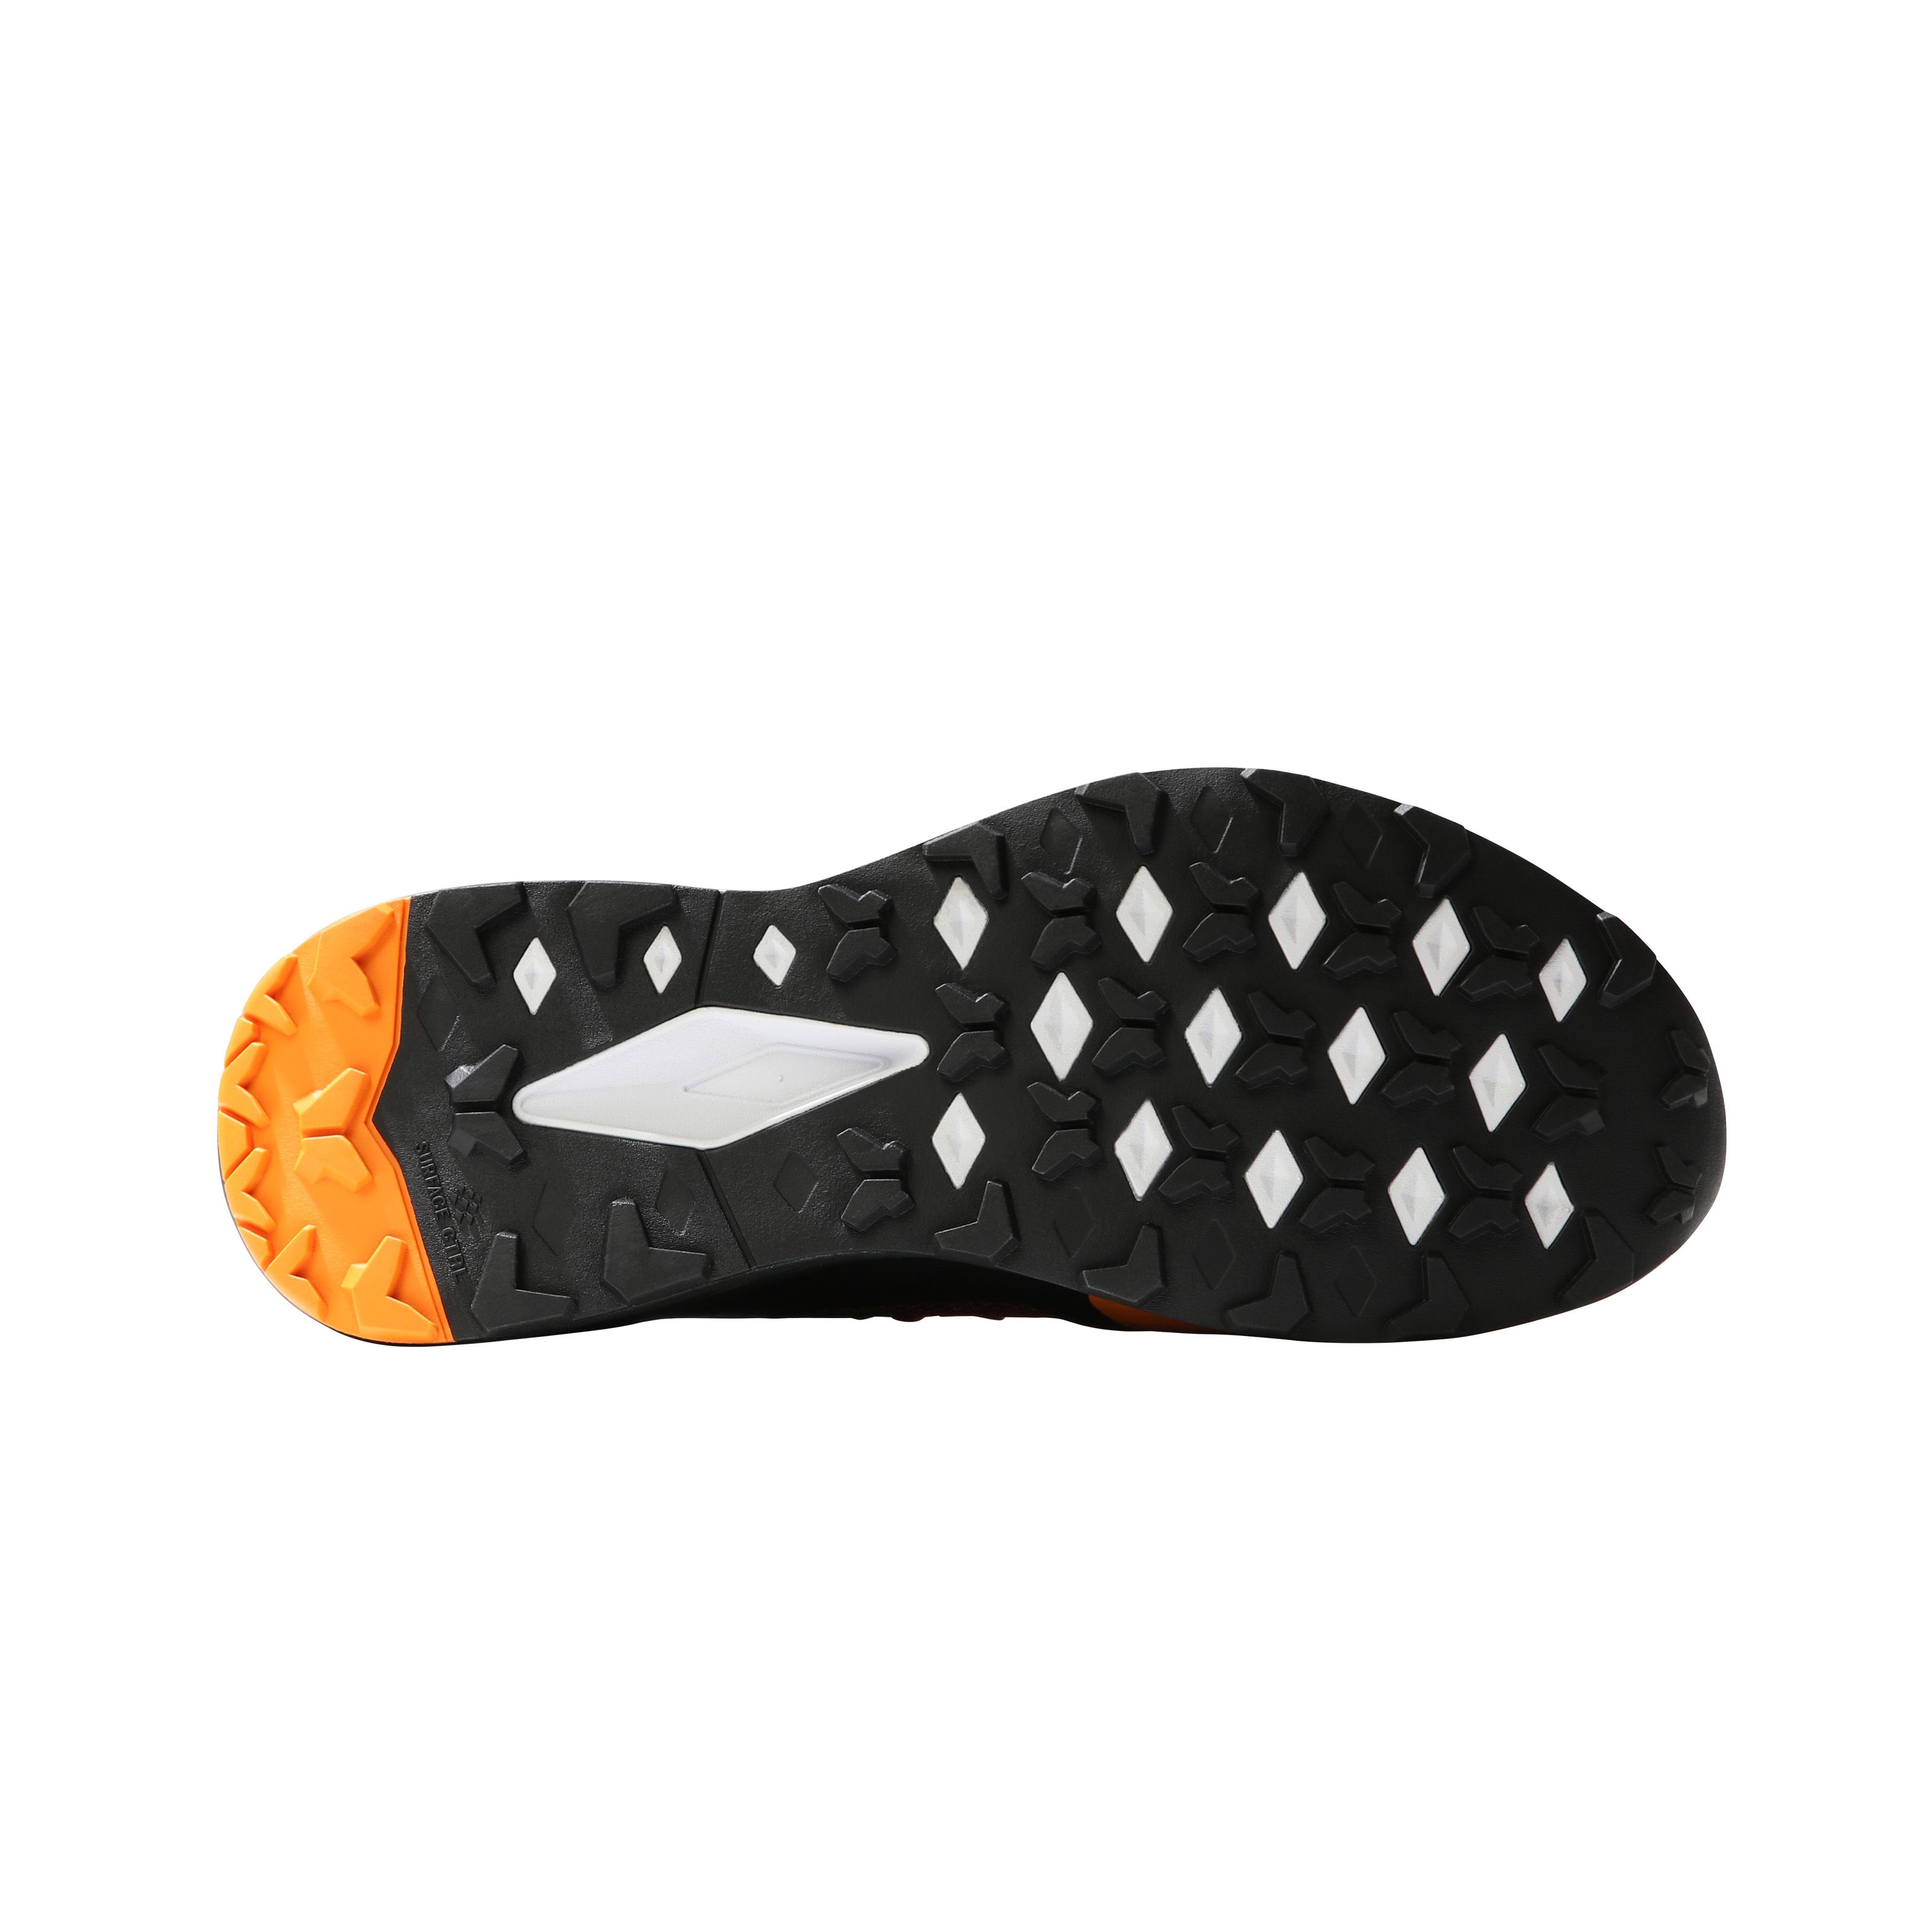 Chaussure de Trail Flight Vectiv - Cone orange / Tnf black